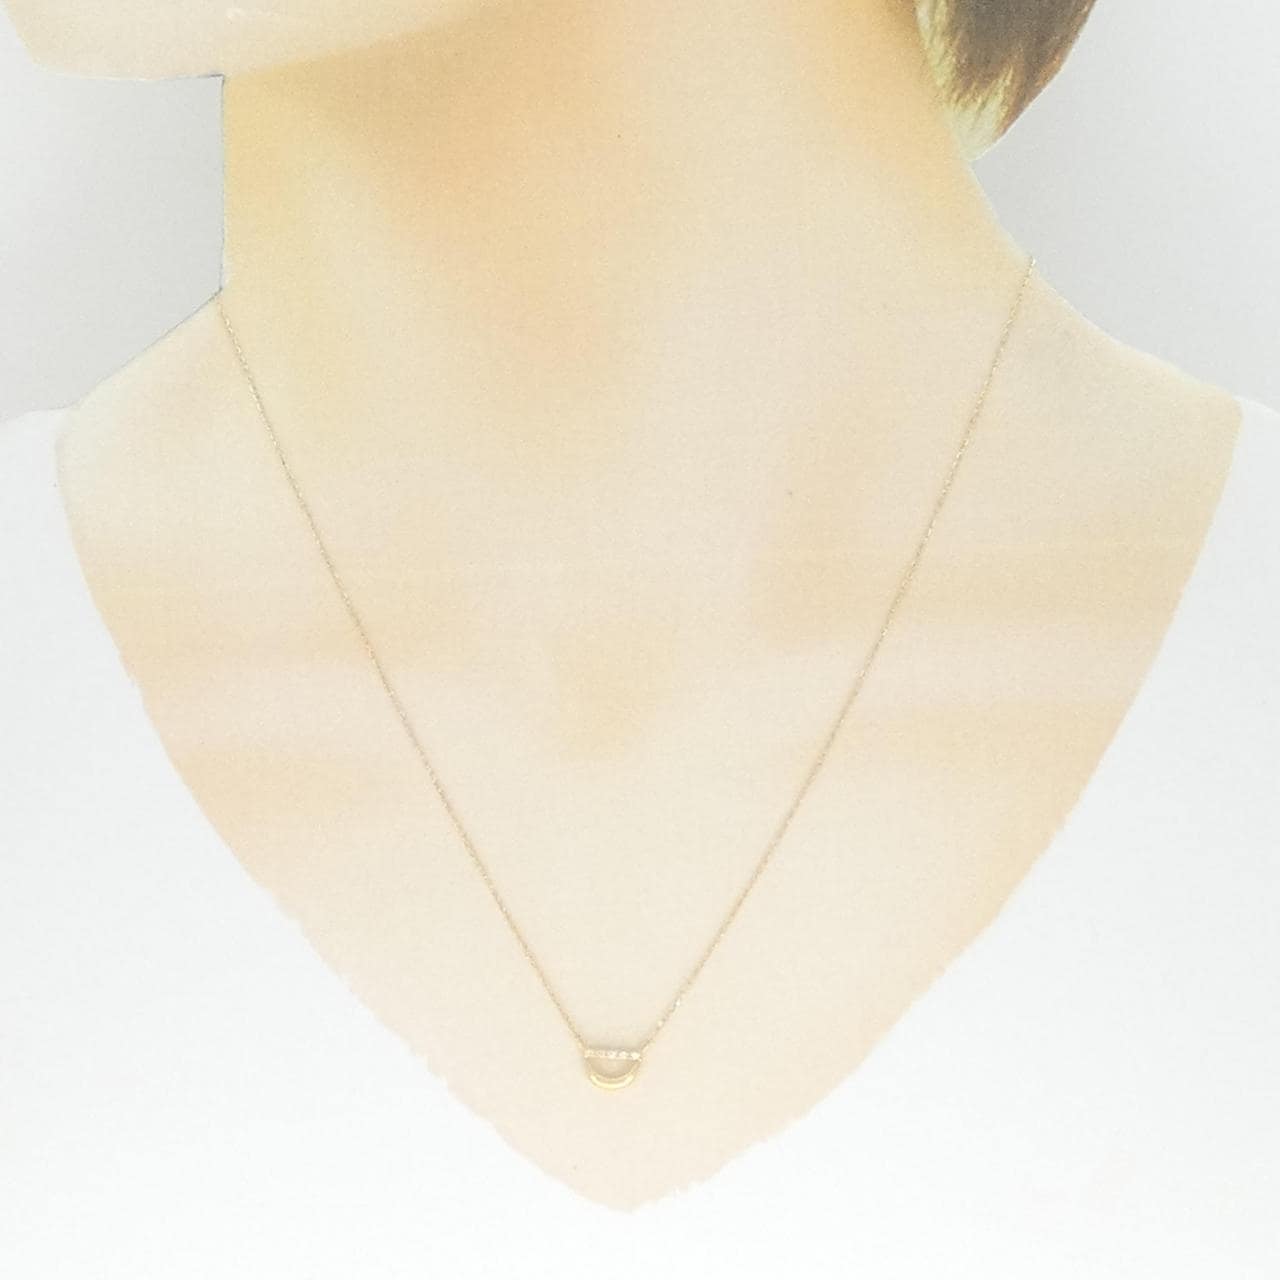 STAR JEWELRY Diamond necklace 0.01CT